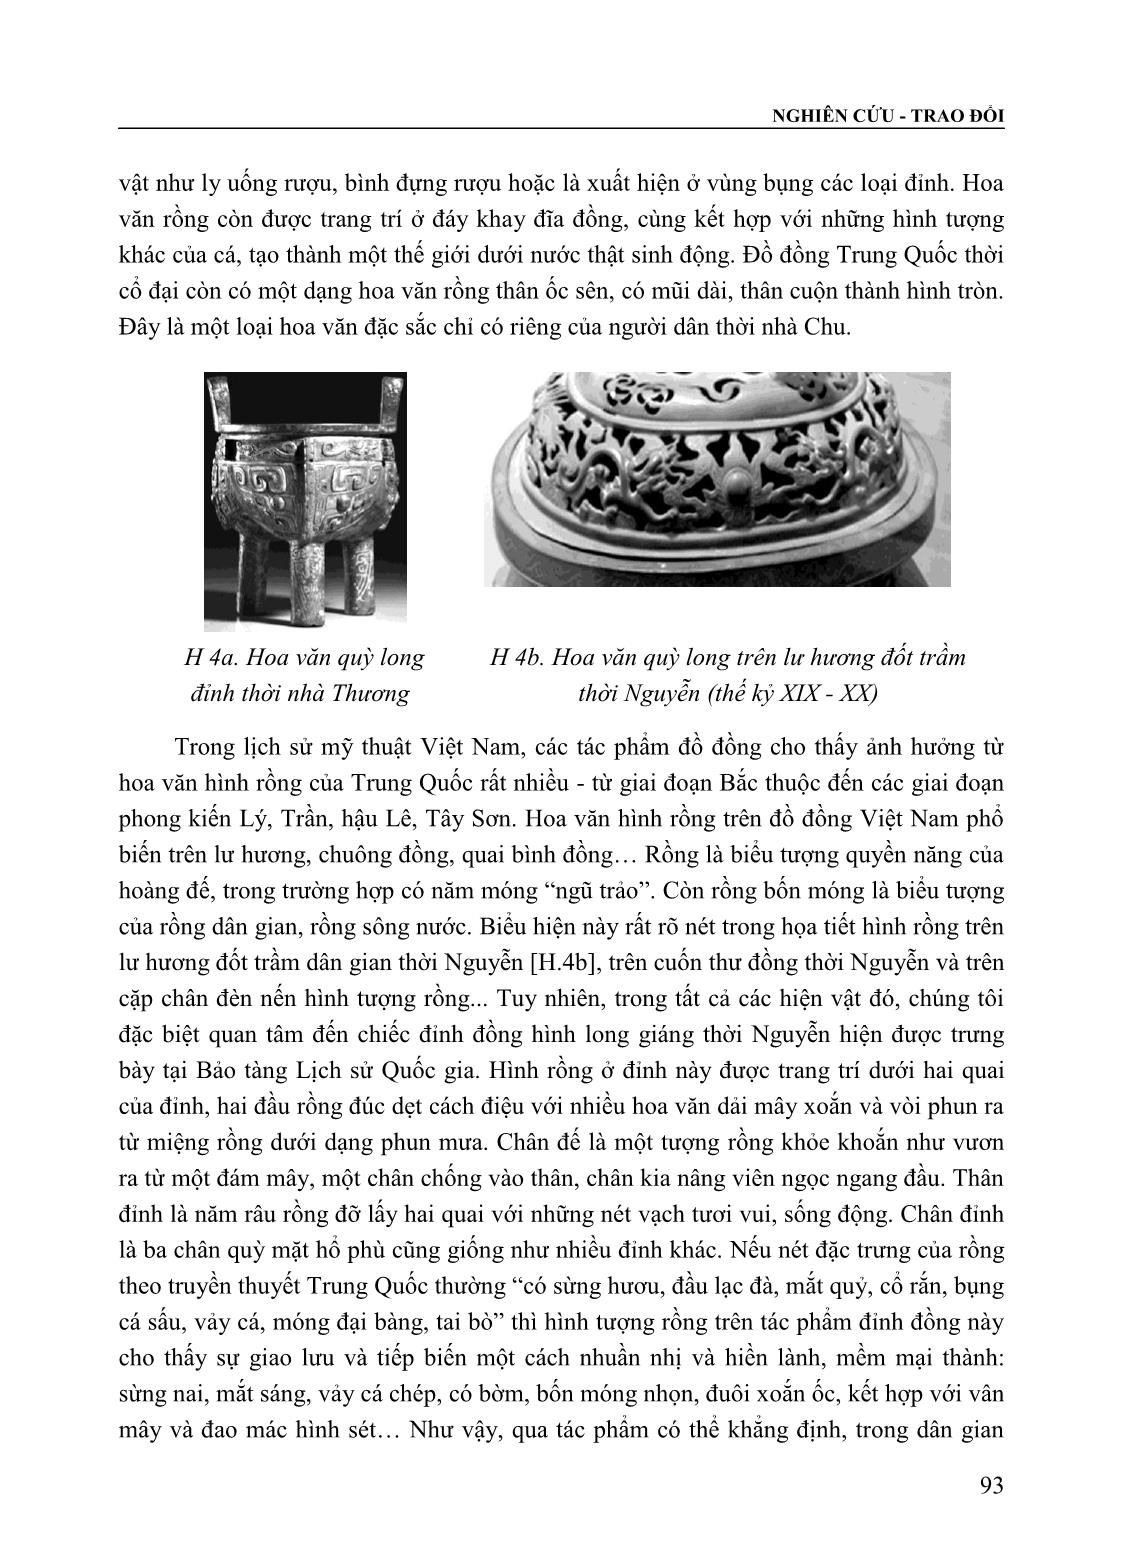 Tạo hình đồ đồng dân gian Việt Nam thời Nguyễn (Thế kỷ XIX - XX) trong bối cảnh giao lưu và tiếp biến với đồ đồng Trung Quốc trang 4